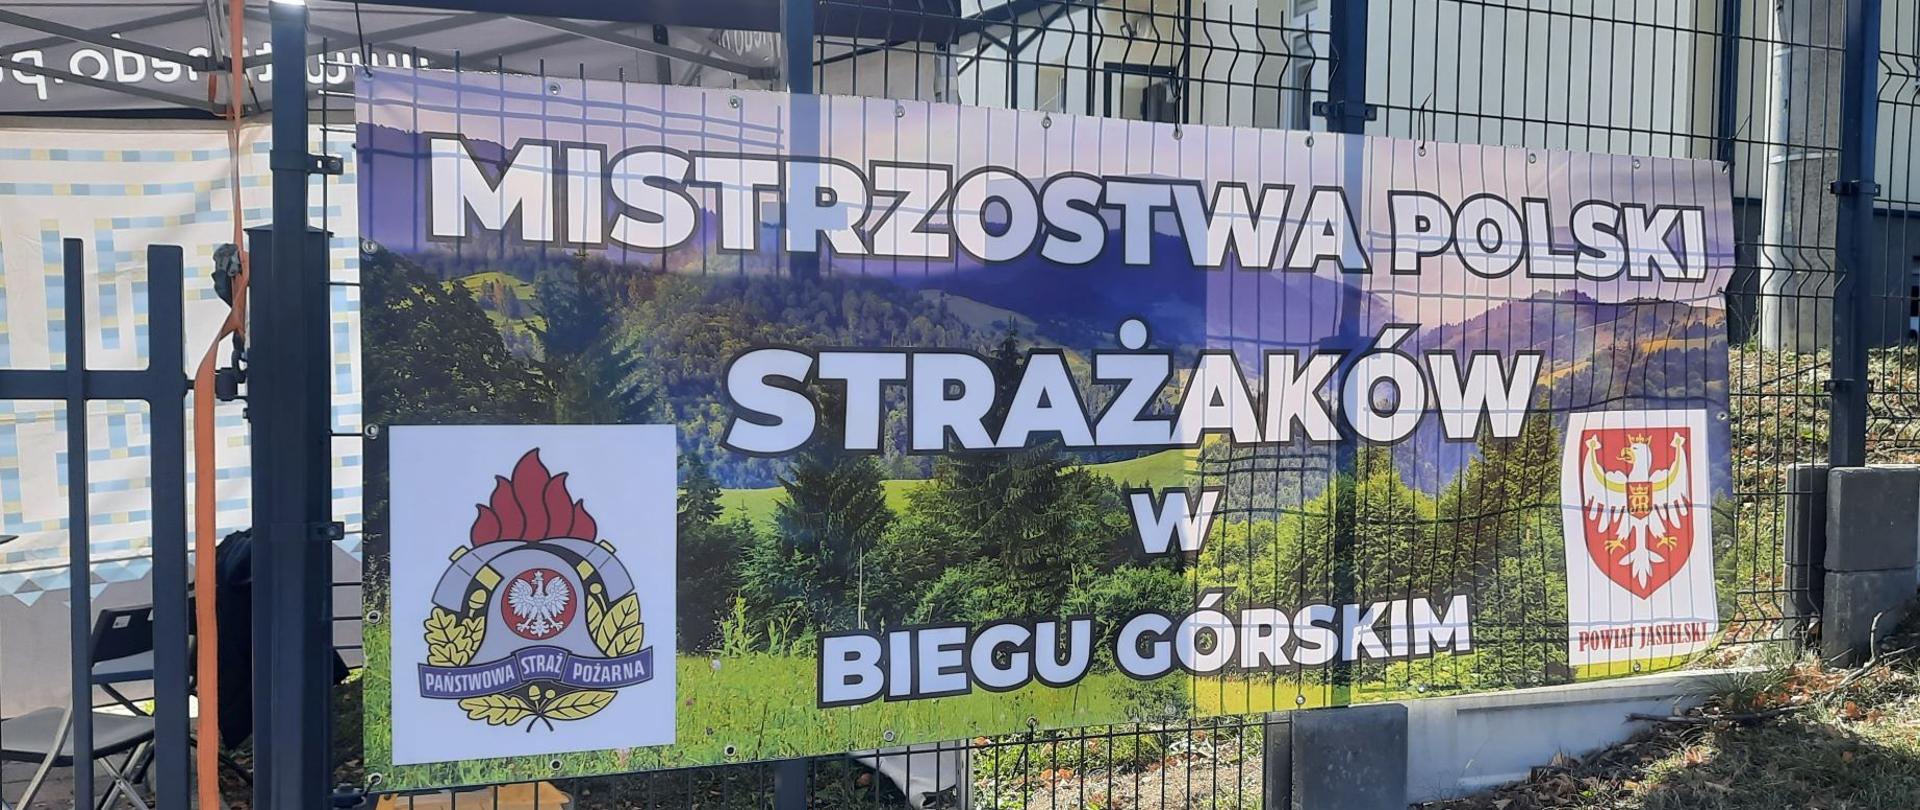 Mistrzostwa Polski Strażaków w biegu górskim